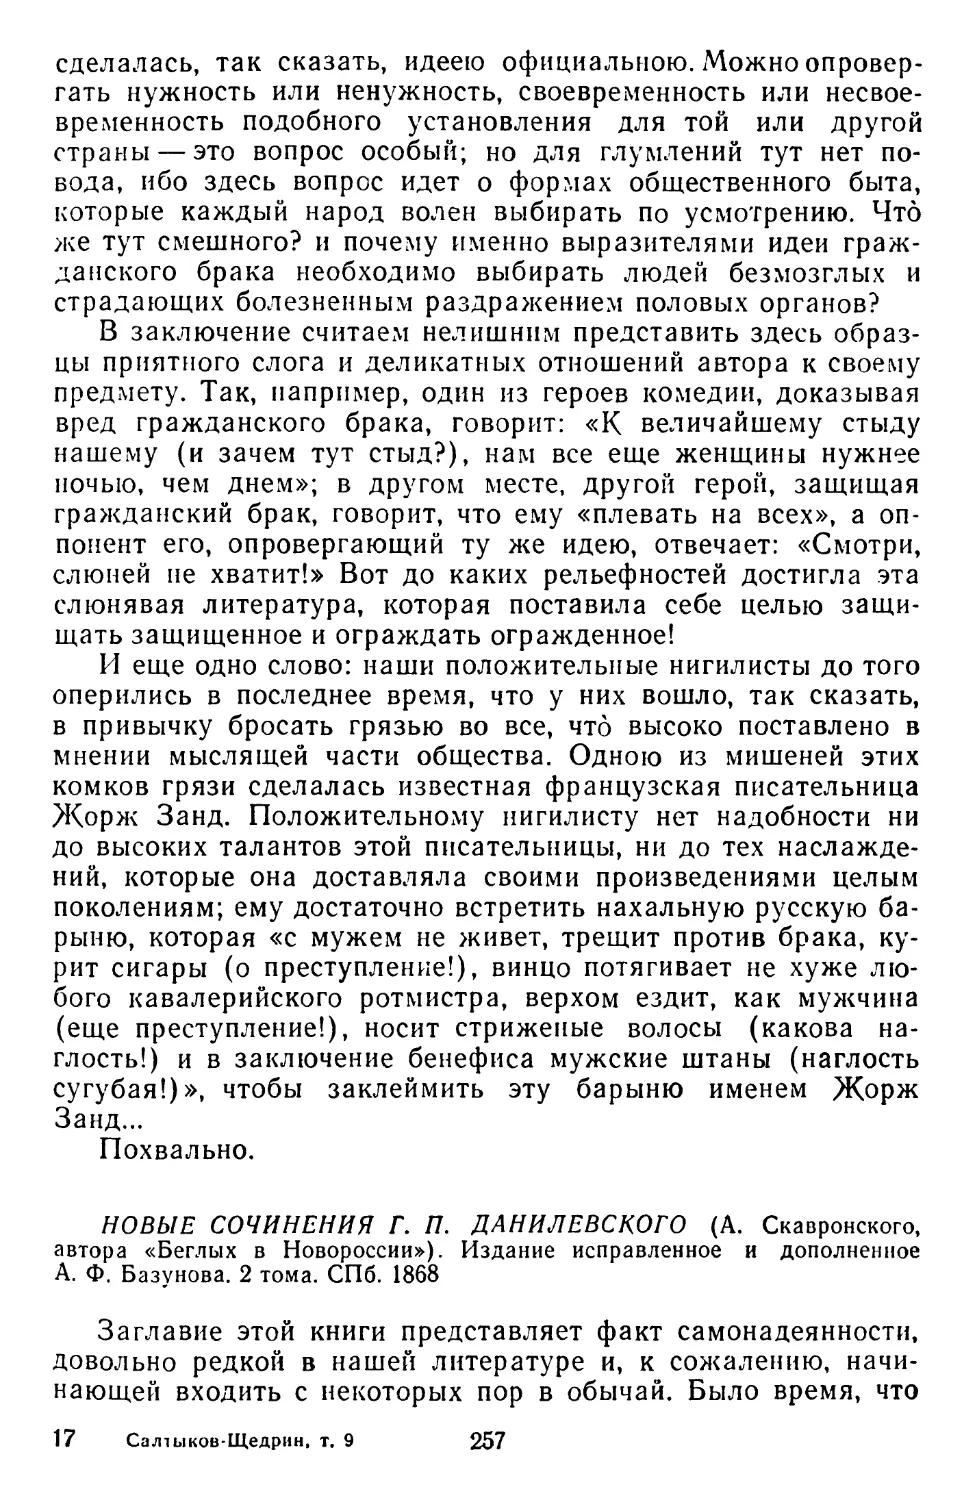 Новые сочинения Г. П. Данилевского